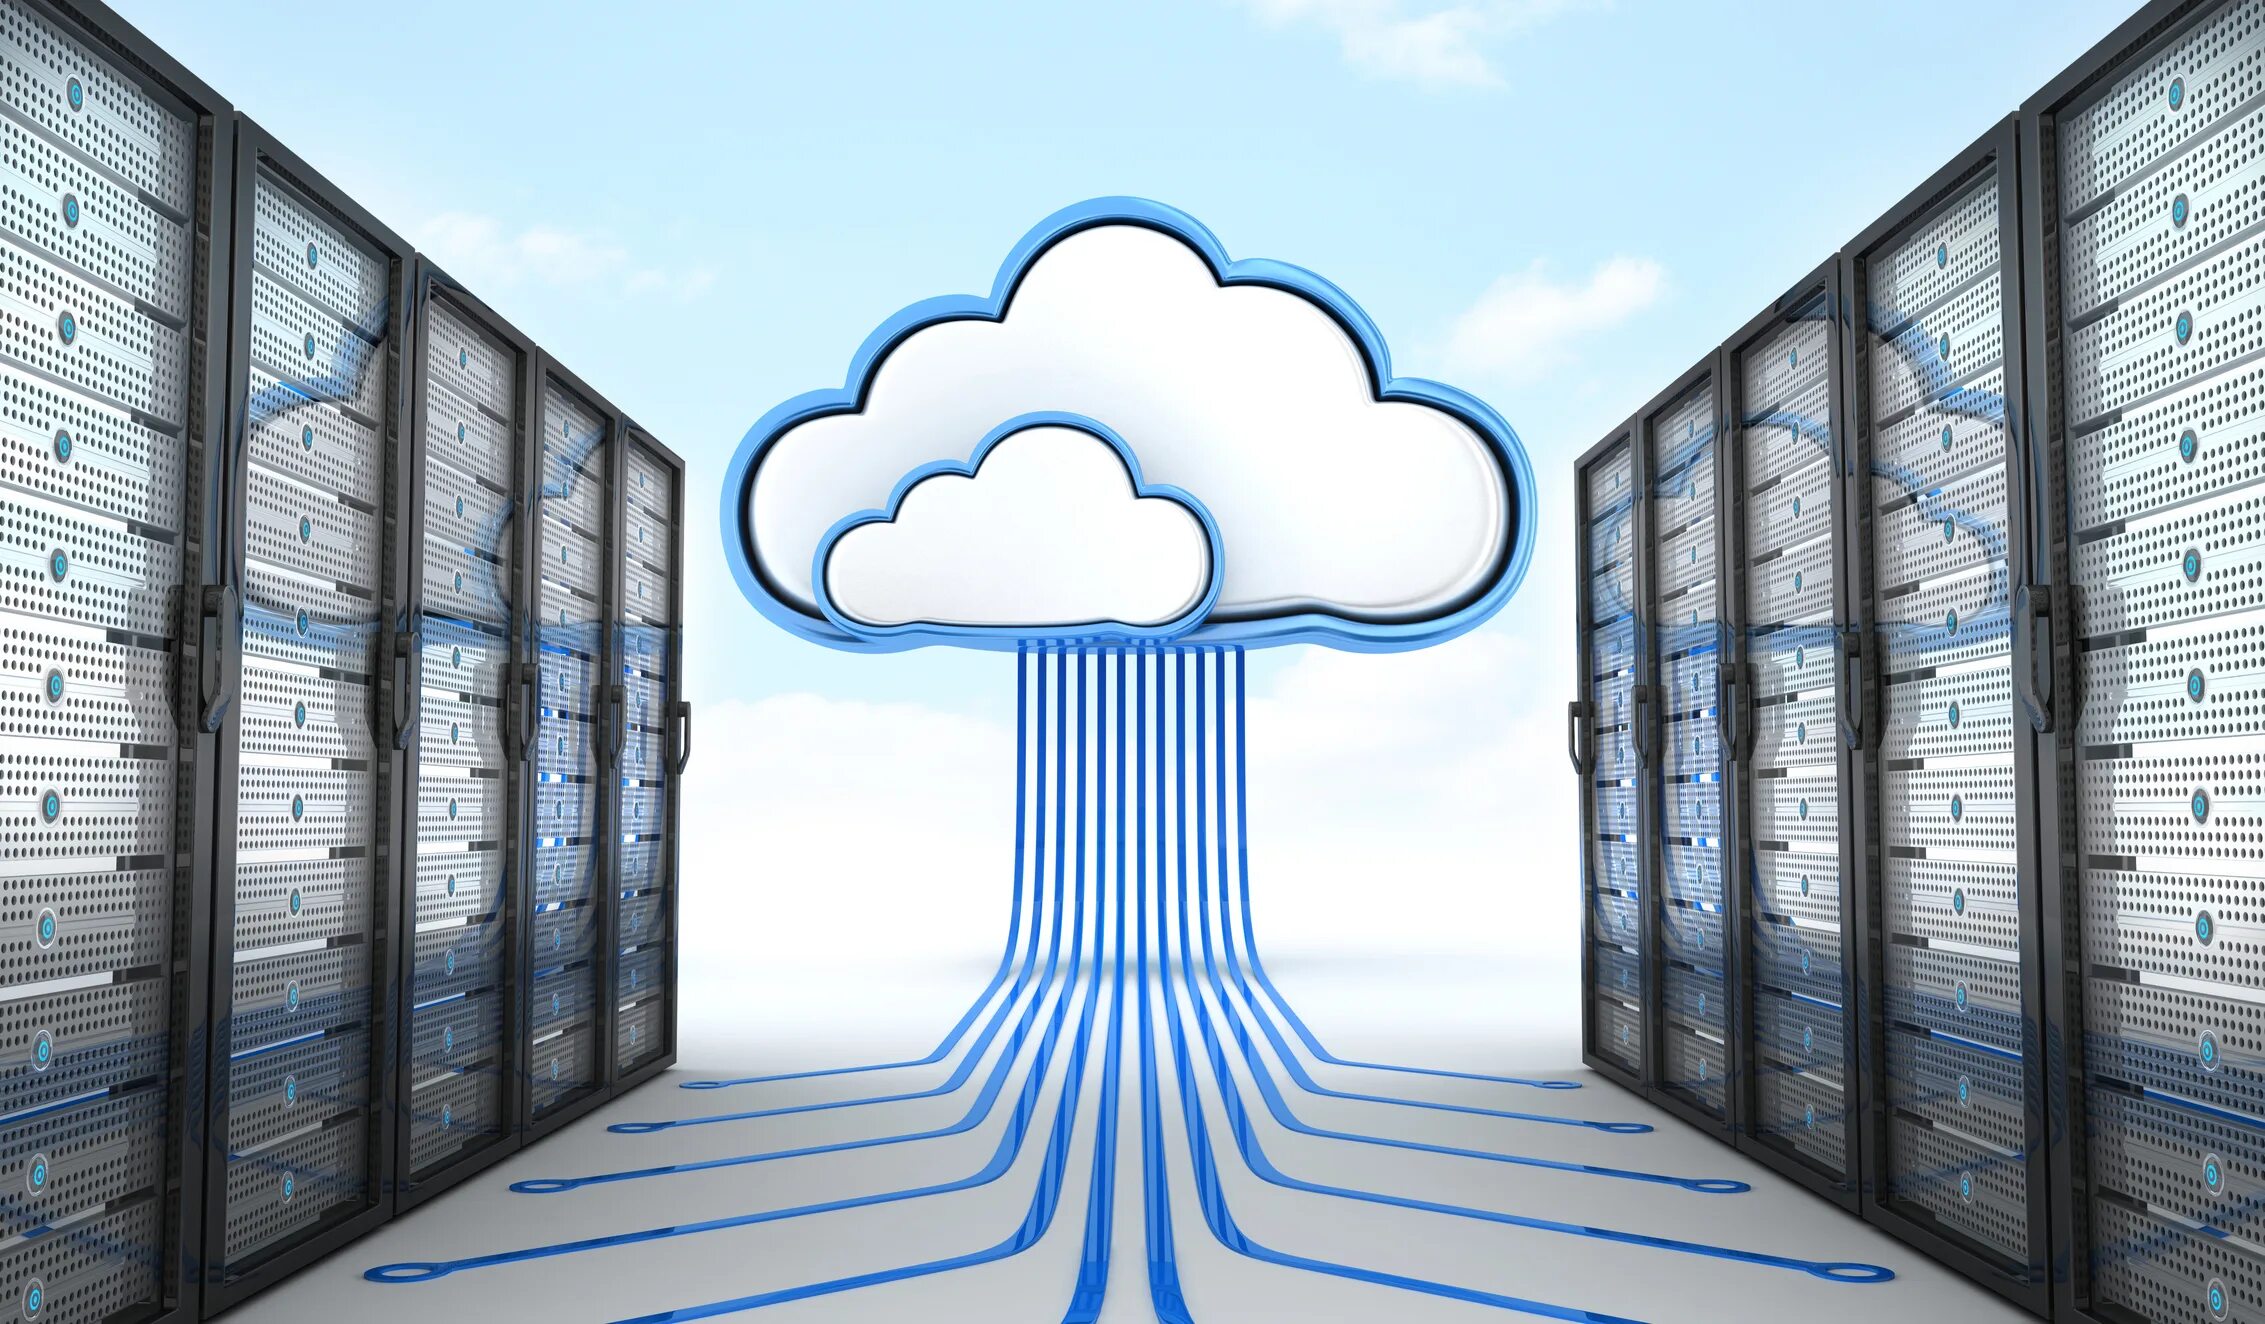 Infrastructure hosting. Облачное хранилище. Сервер. Облачные системы хранения данных. Облако виртуальное хранилище.